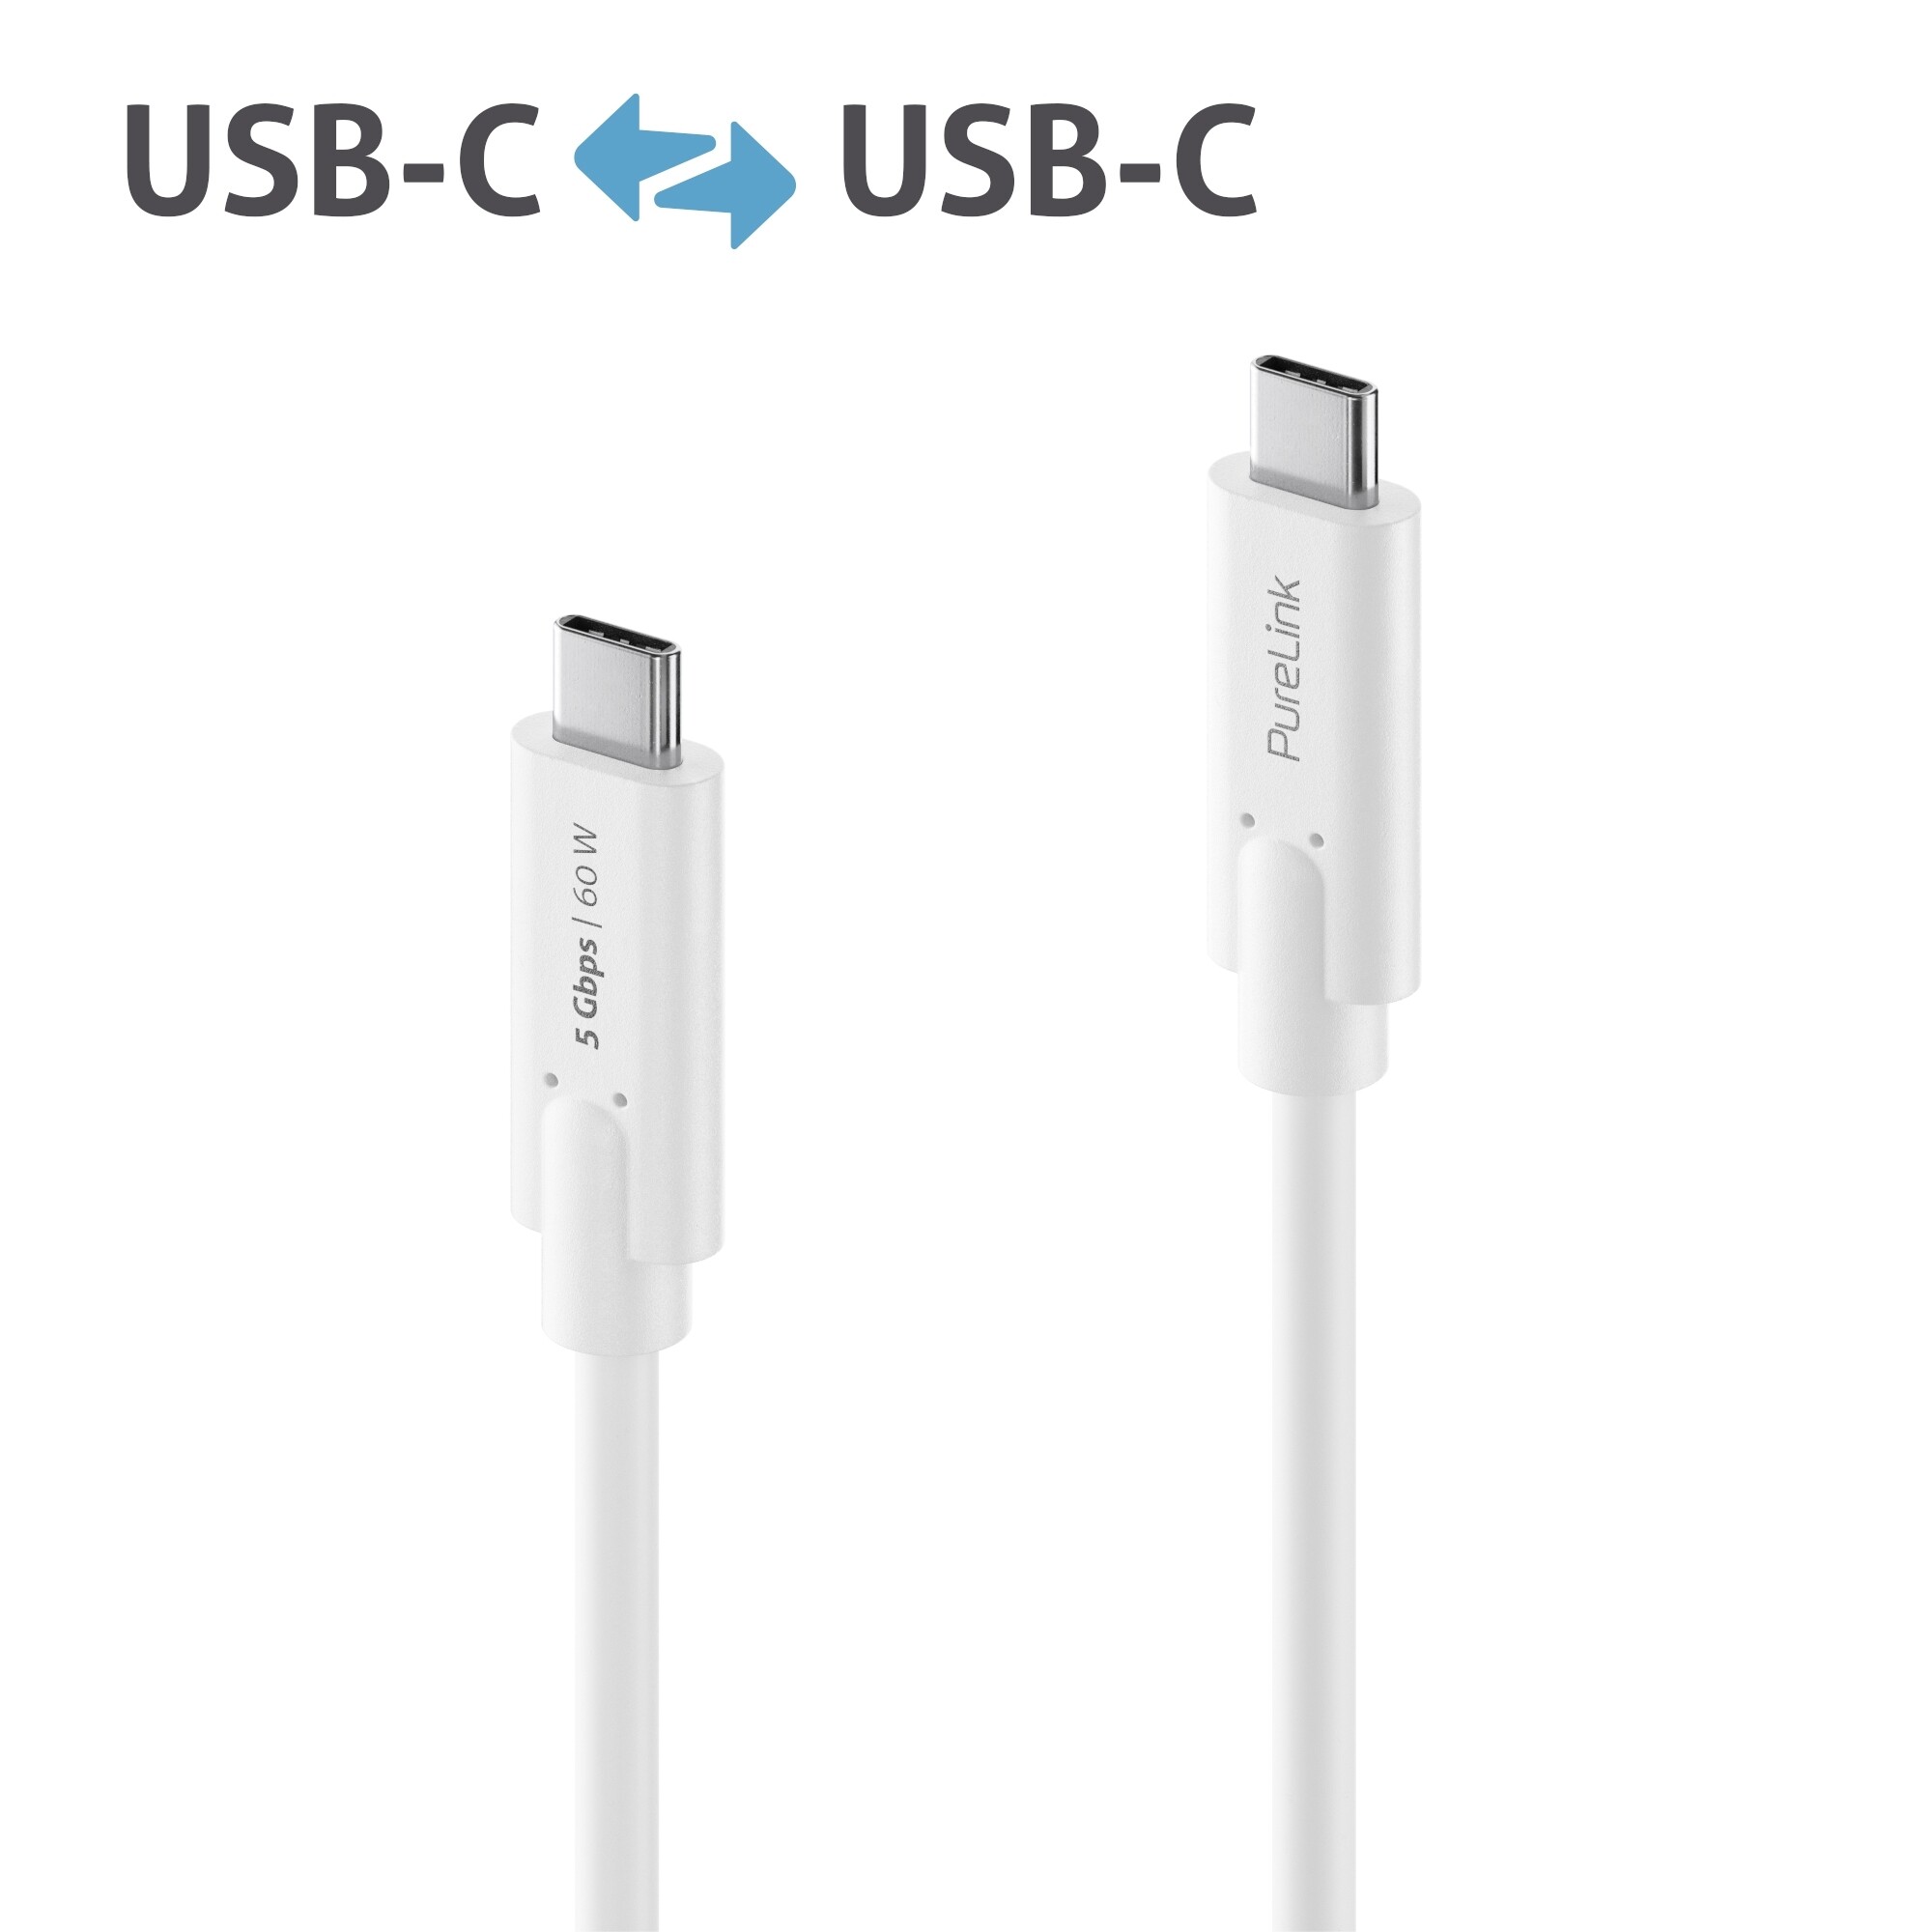 Purelink-IS2500-005-USB-C-auf-USB-C-Kabel-0-50m-weiss